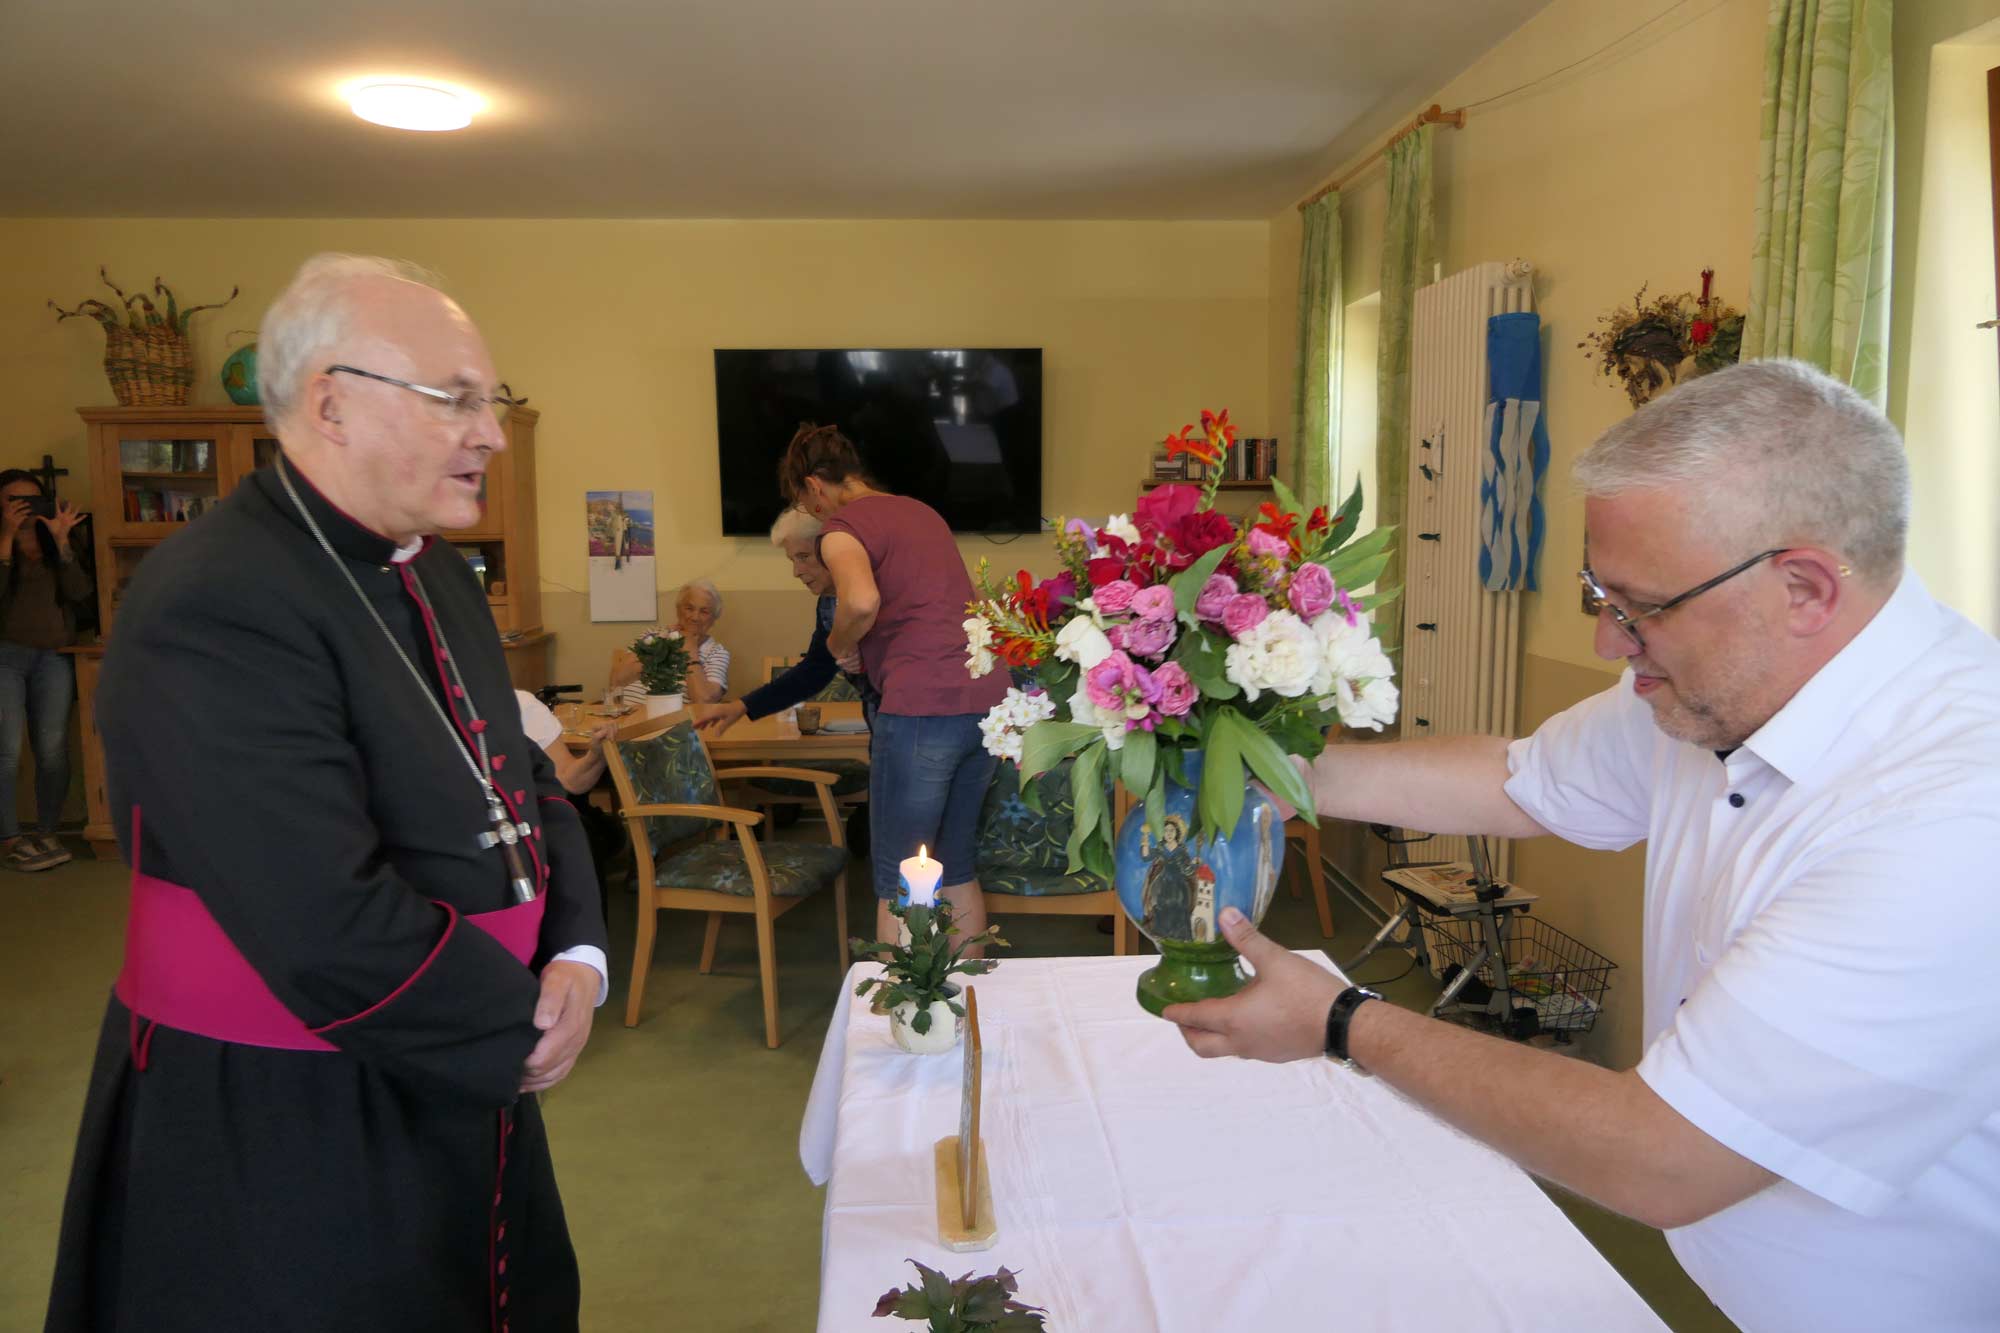 Ein Mann zeigt dem Bischof eine Blumenvase